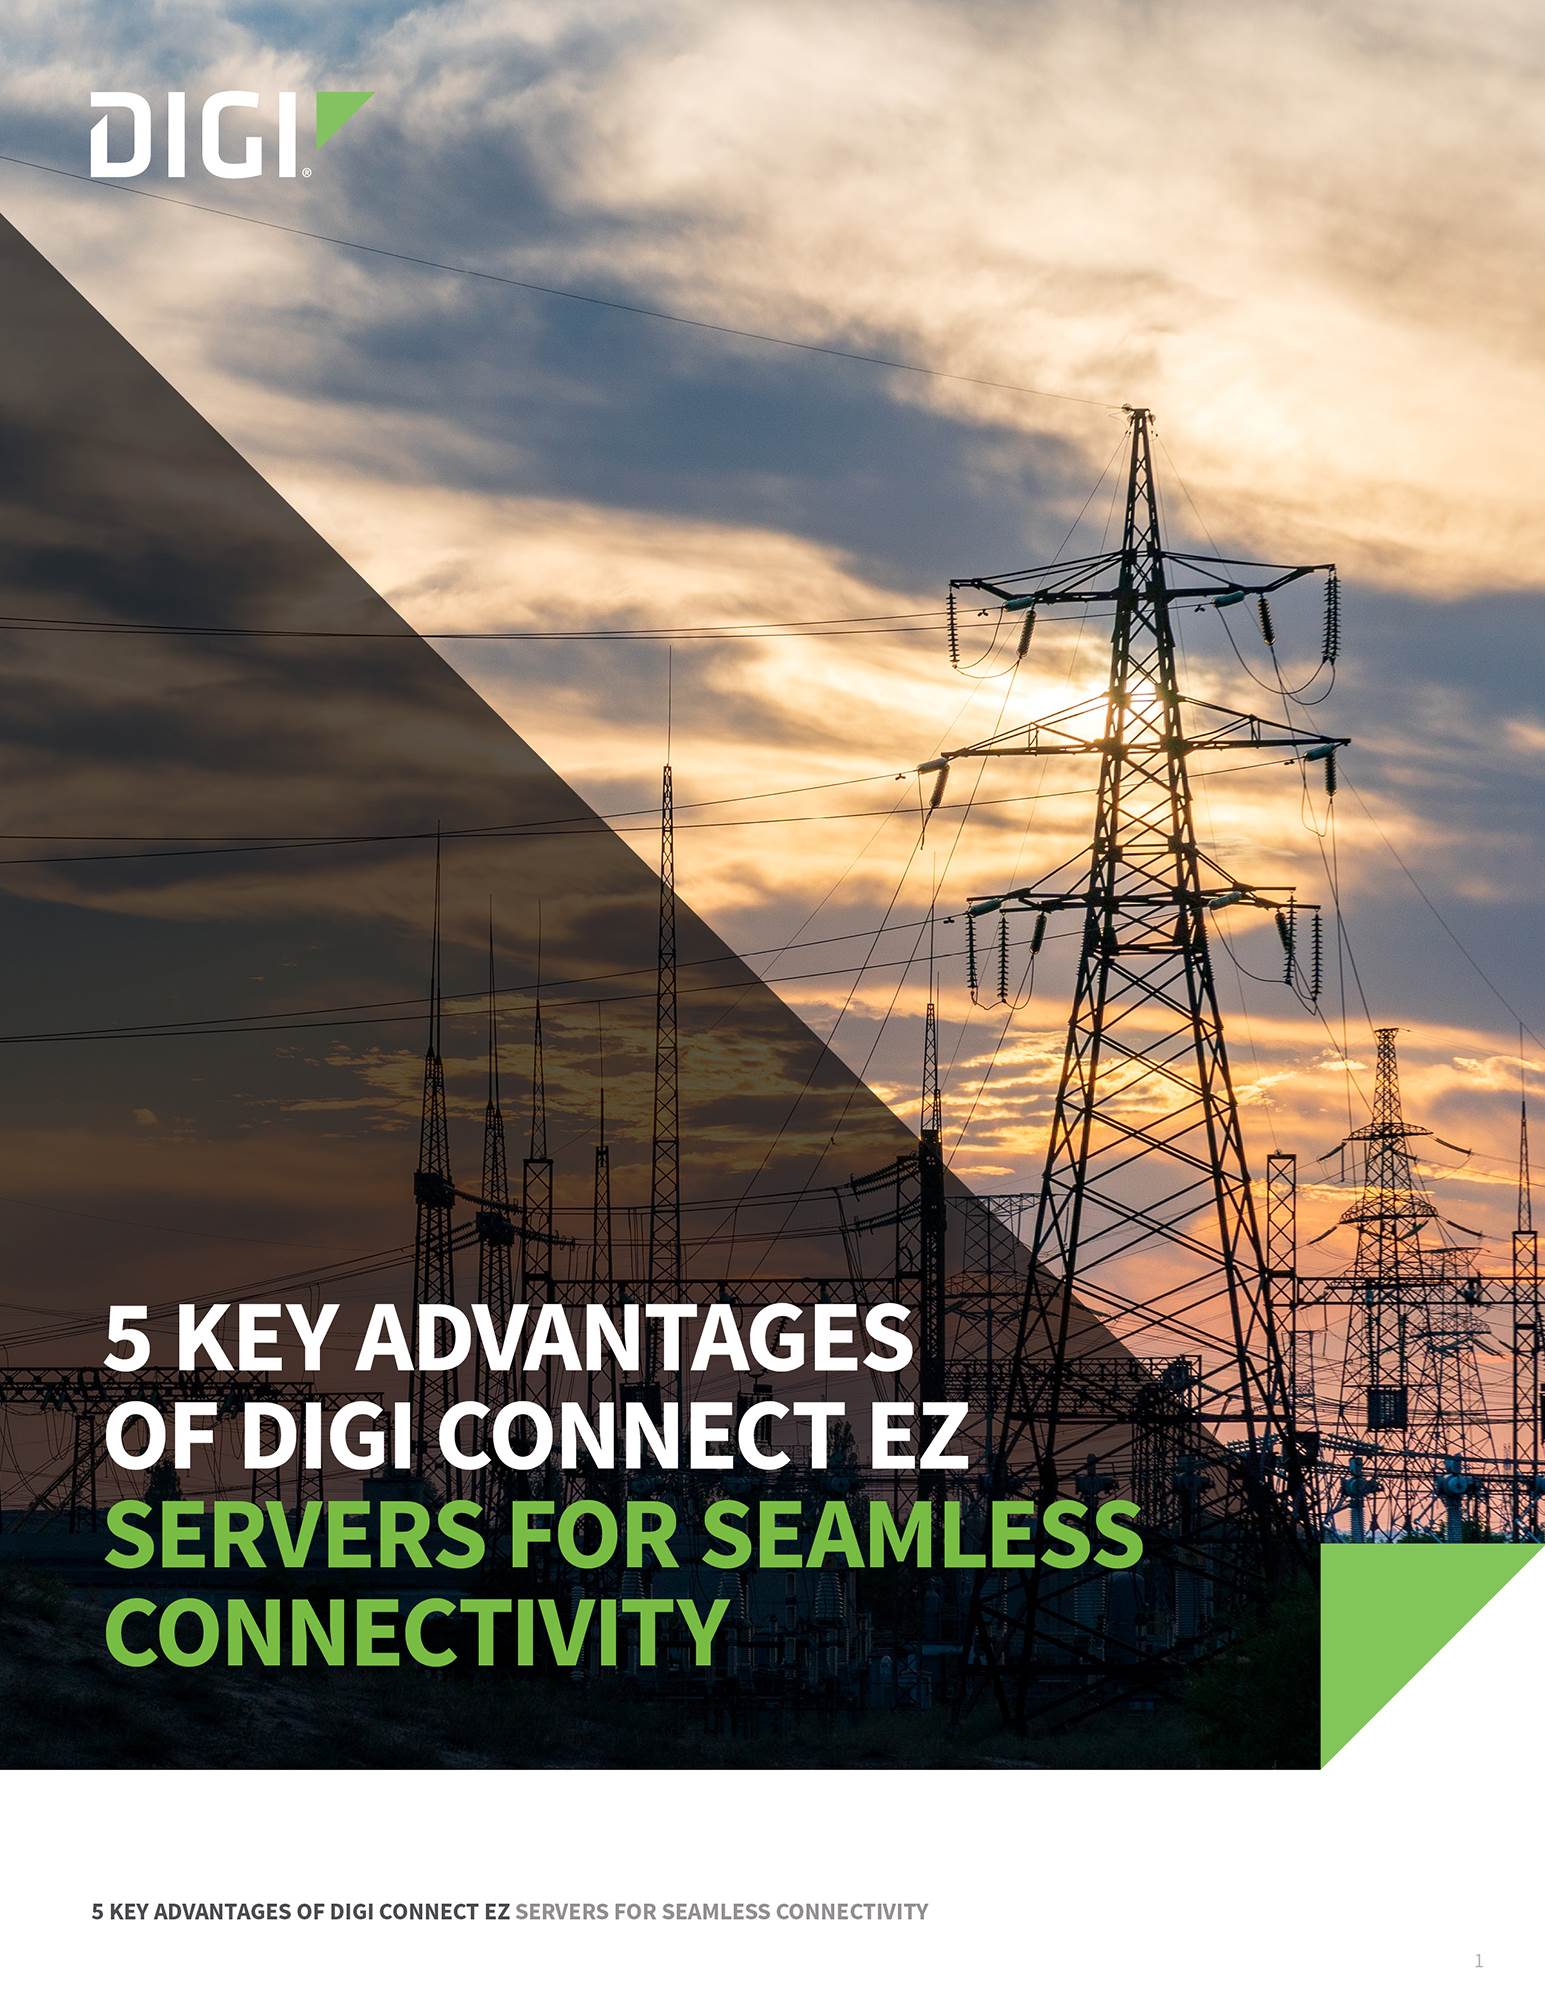 5 ventajas clave de los servidores Digi Connect EZ para una conectividad perfecta